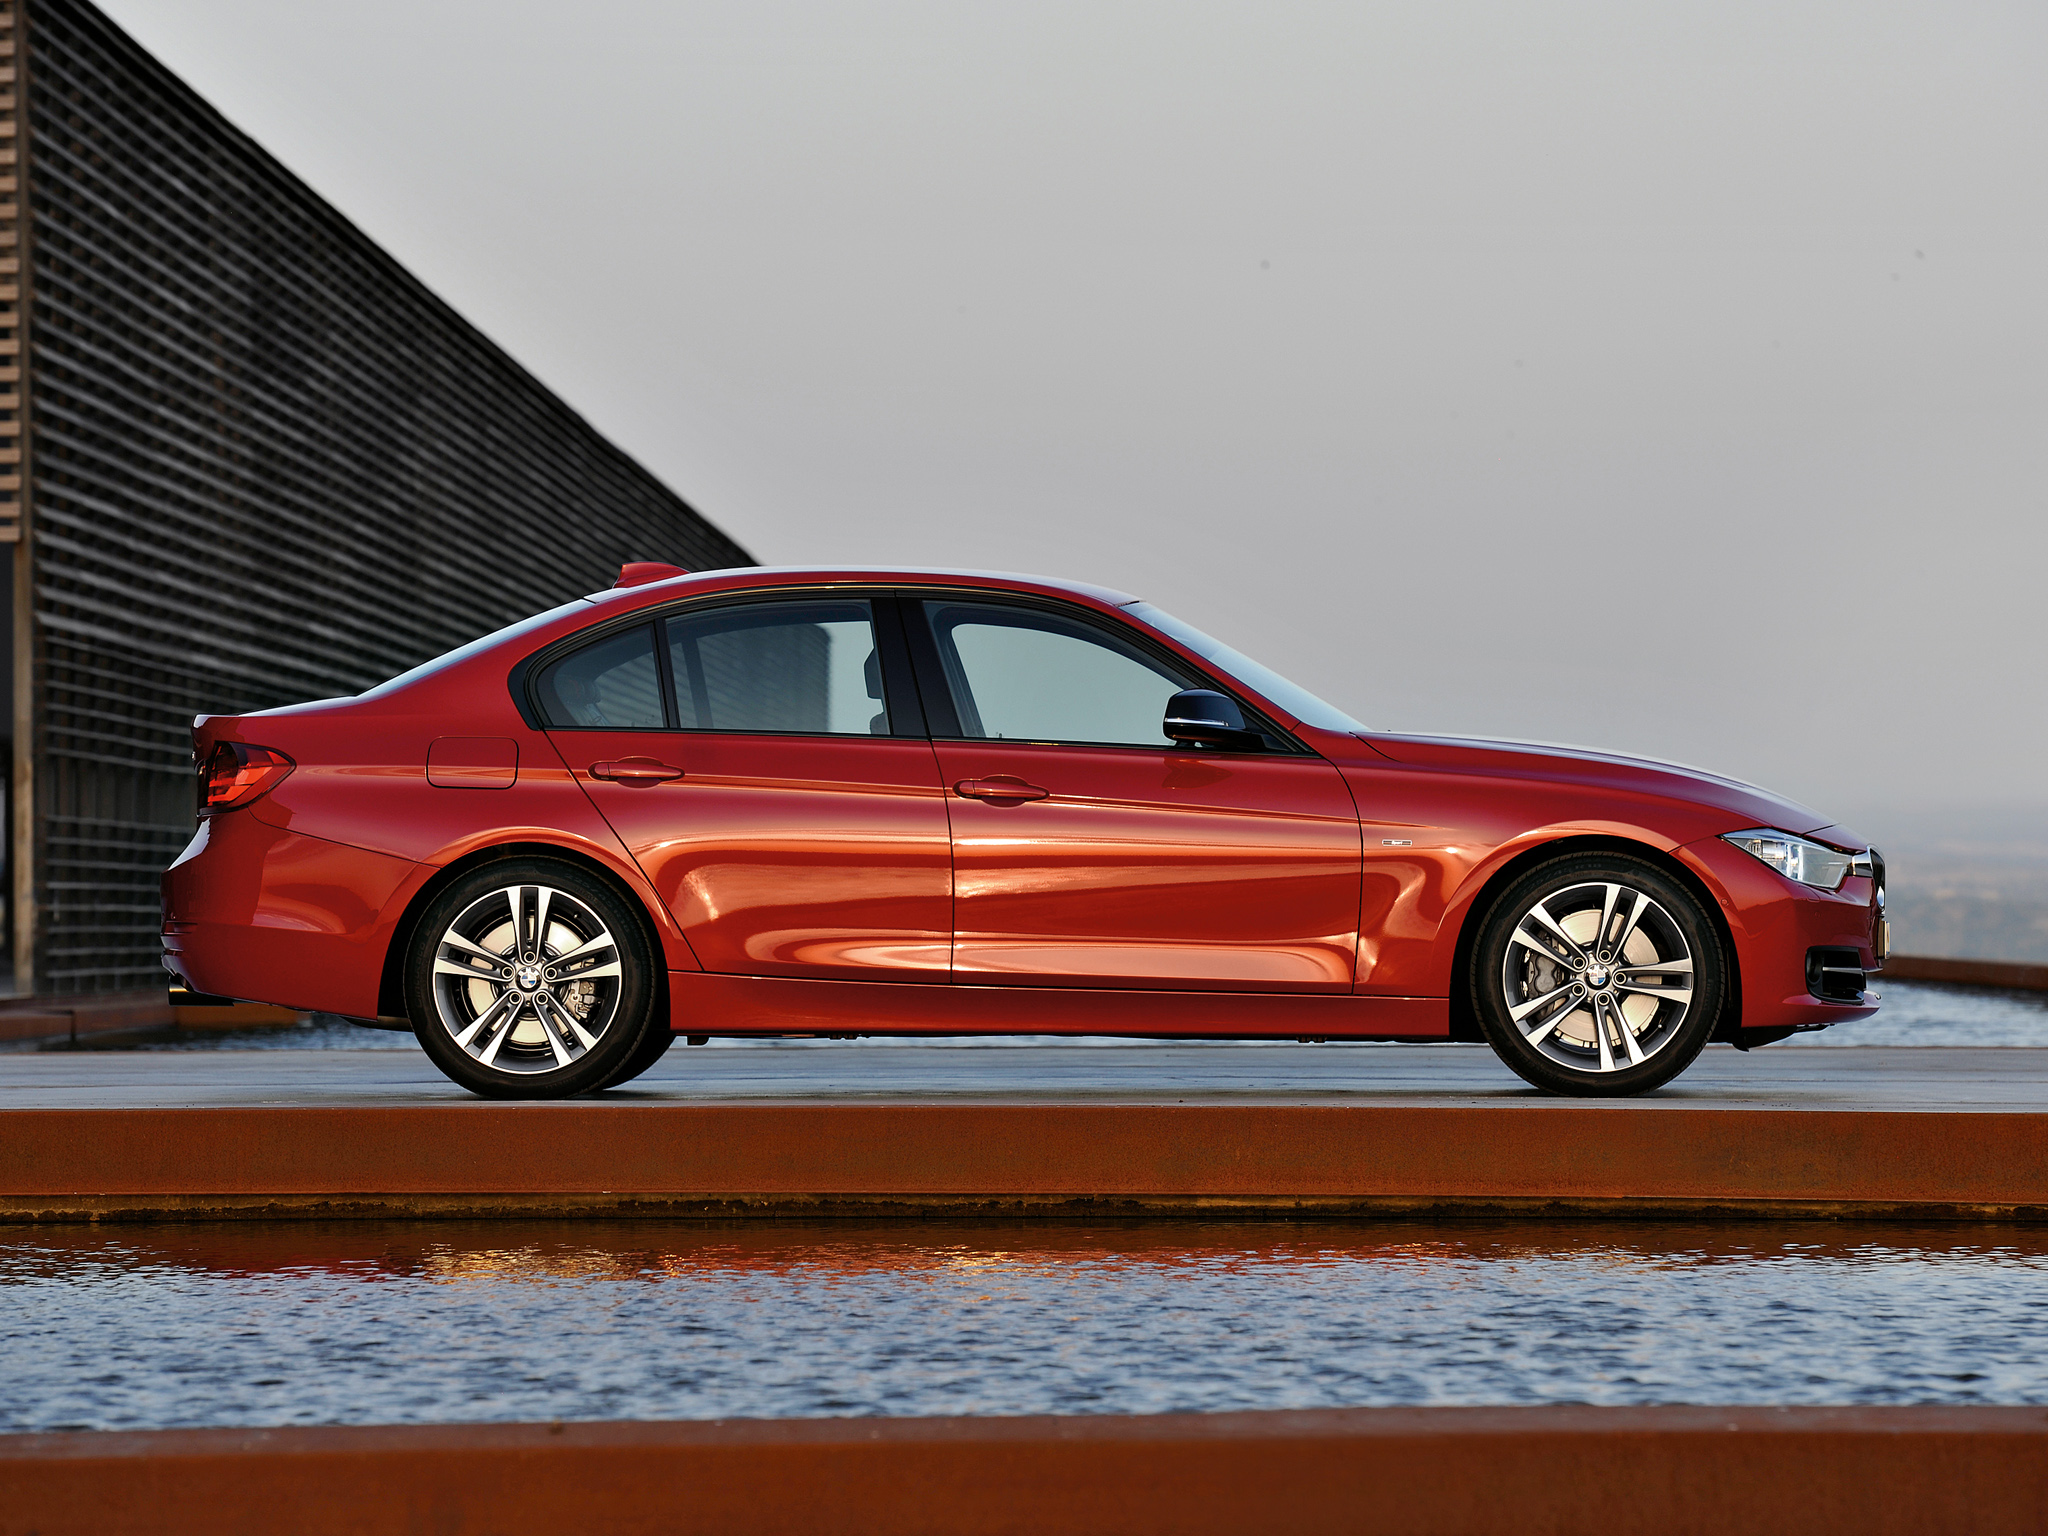  Yeni BMW F30 3 serisi tanıtıldı ! İlk fotoğraflar ve Reklam filmi